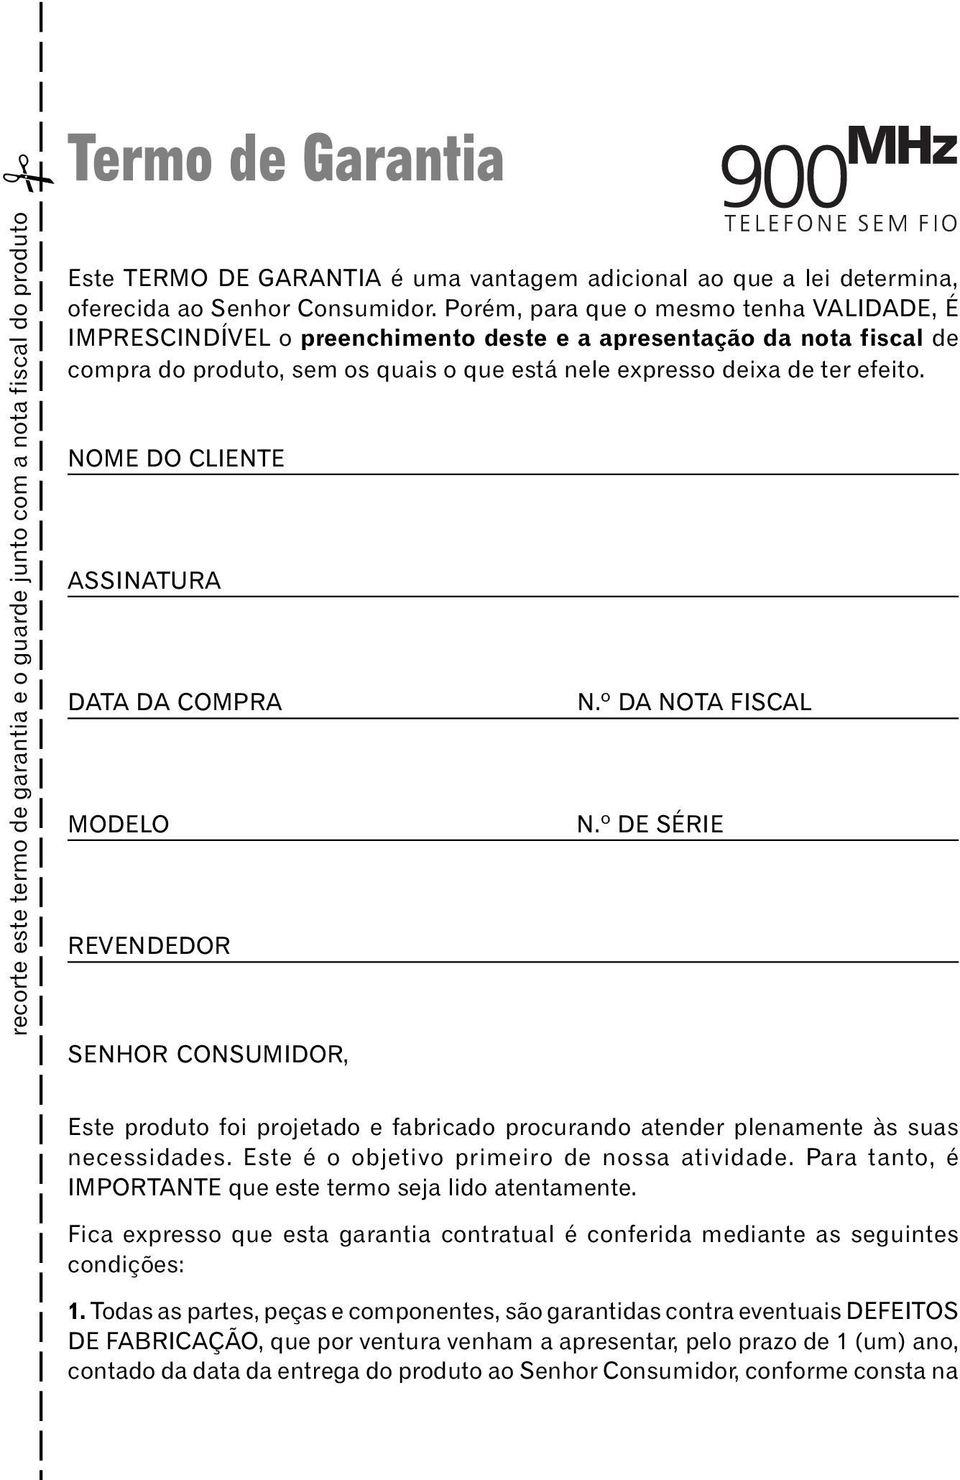 NOME DO CLIENTE ASSINATURA DATA DA COMPRA MODELO REVENDEDOR SENHOR CONSUMIDOR, N.º DA NOTA FISCAL N.